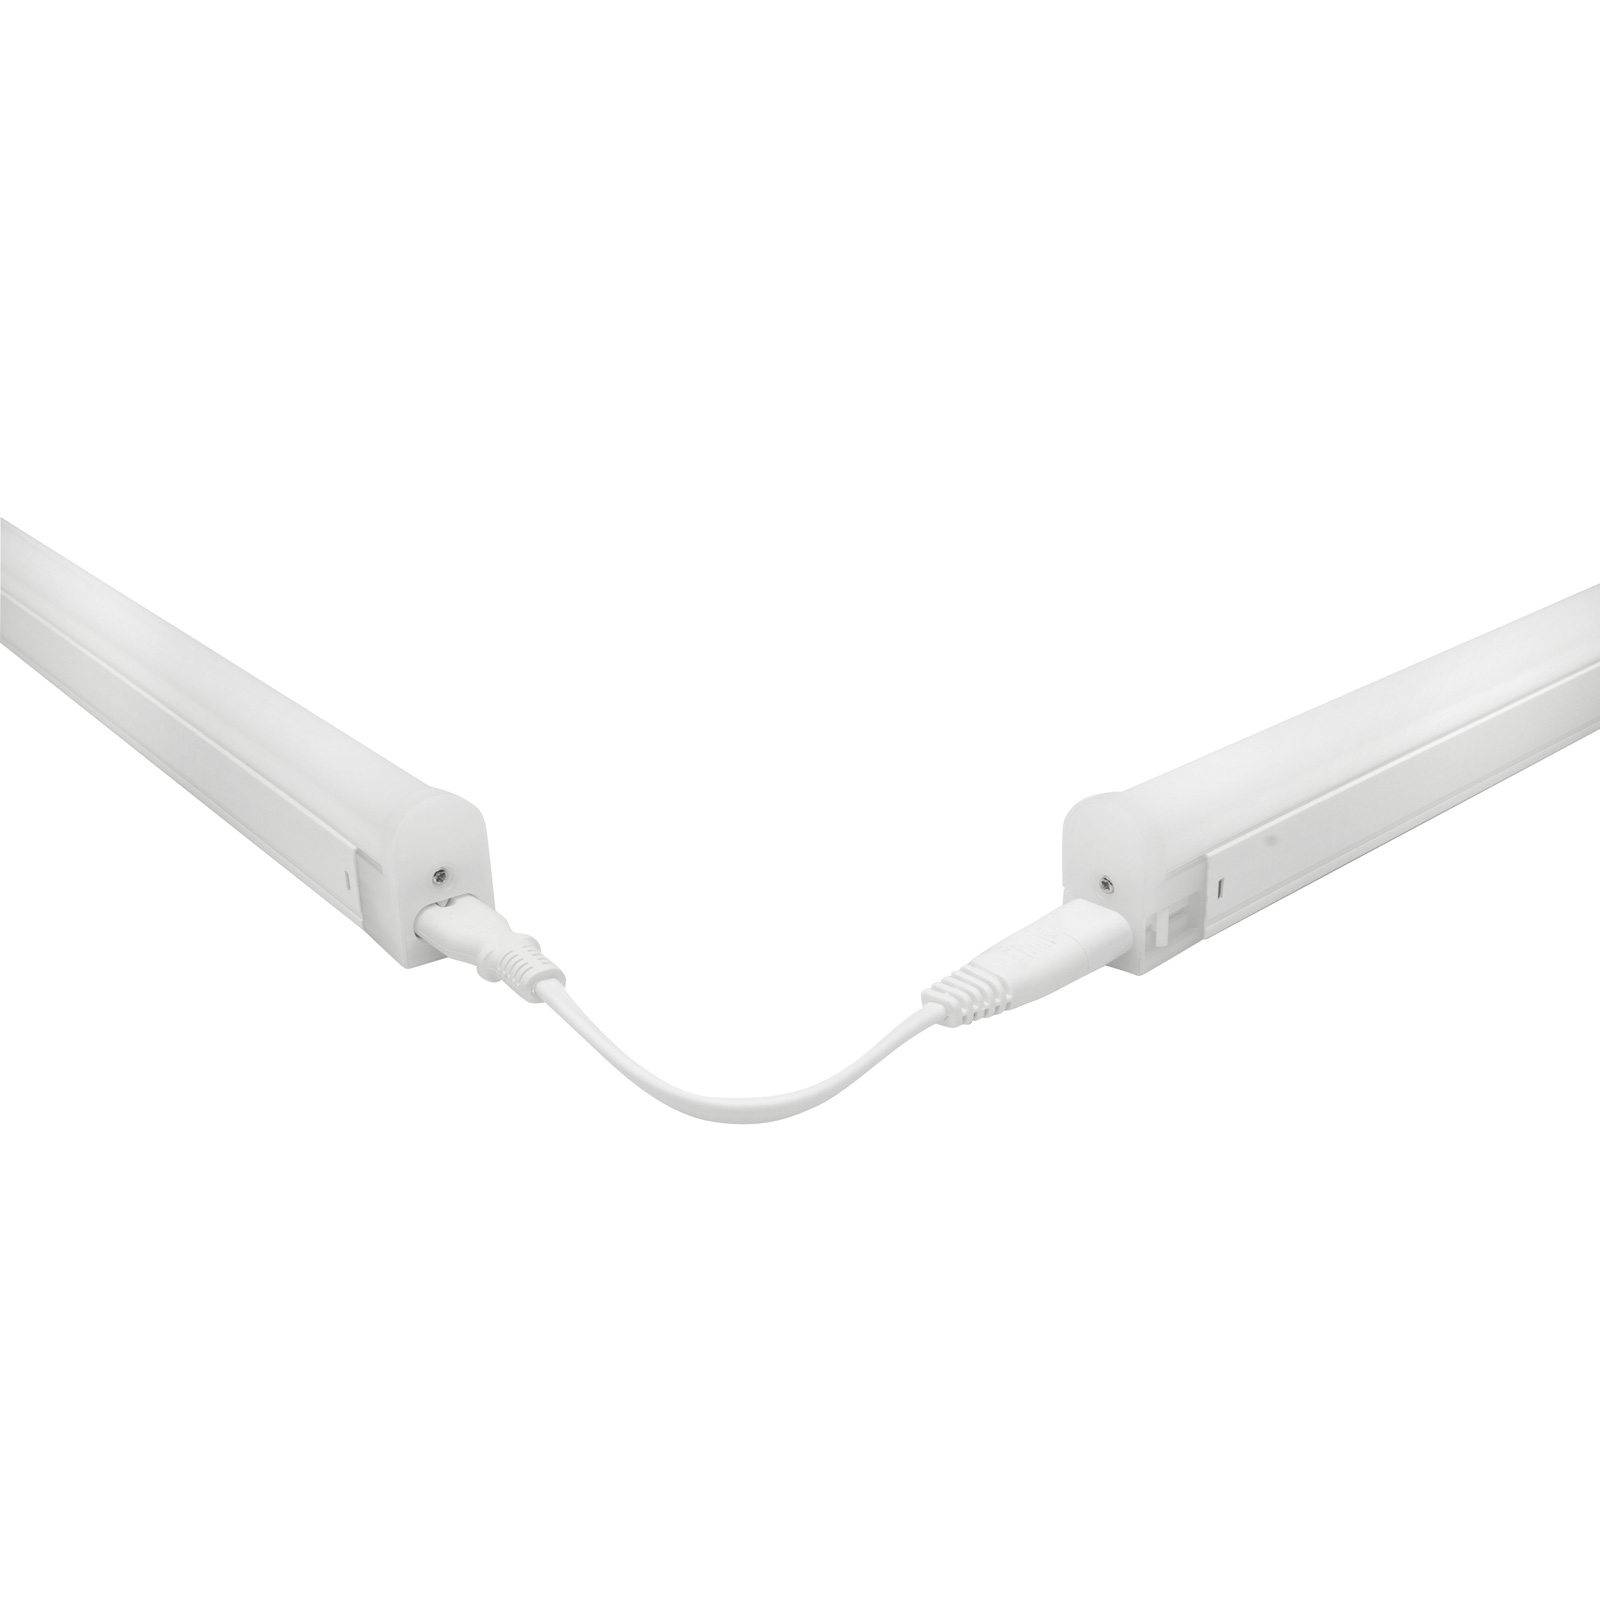 Cable de conexión para lámpara LED bajo armario Pino